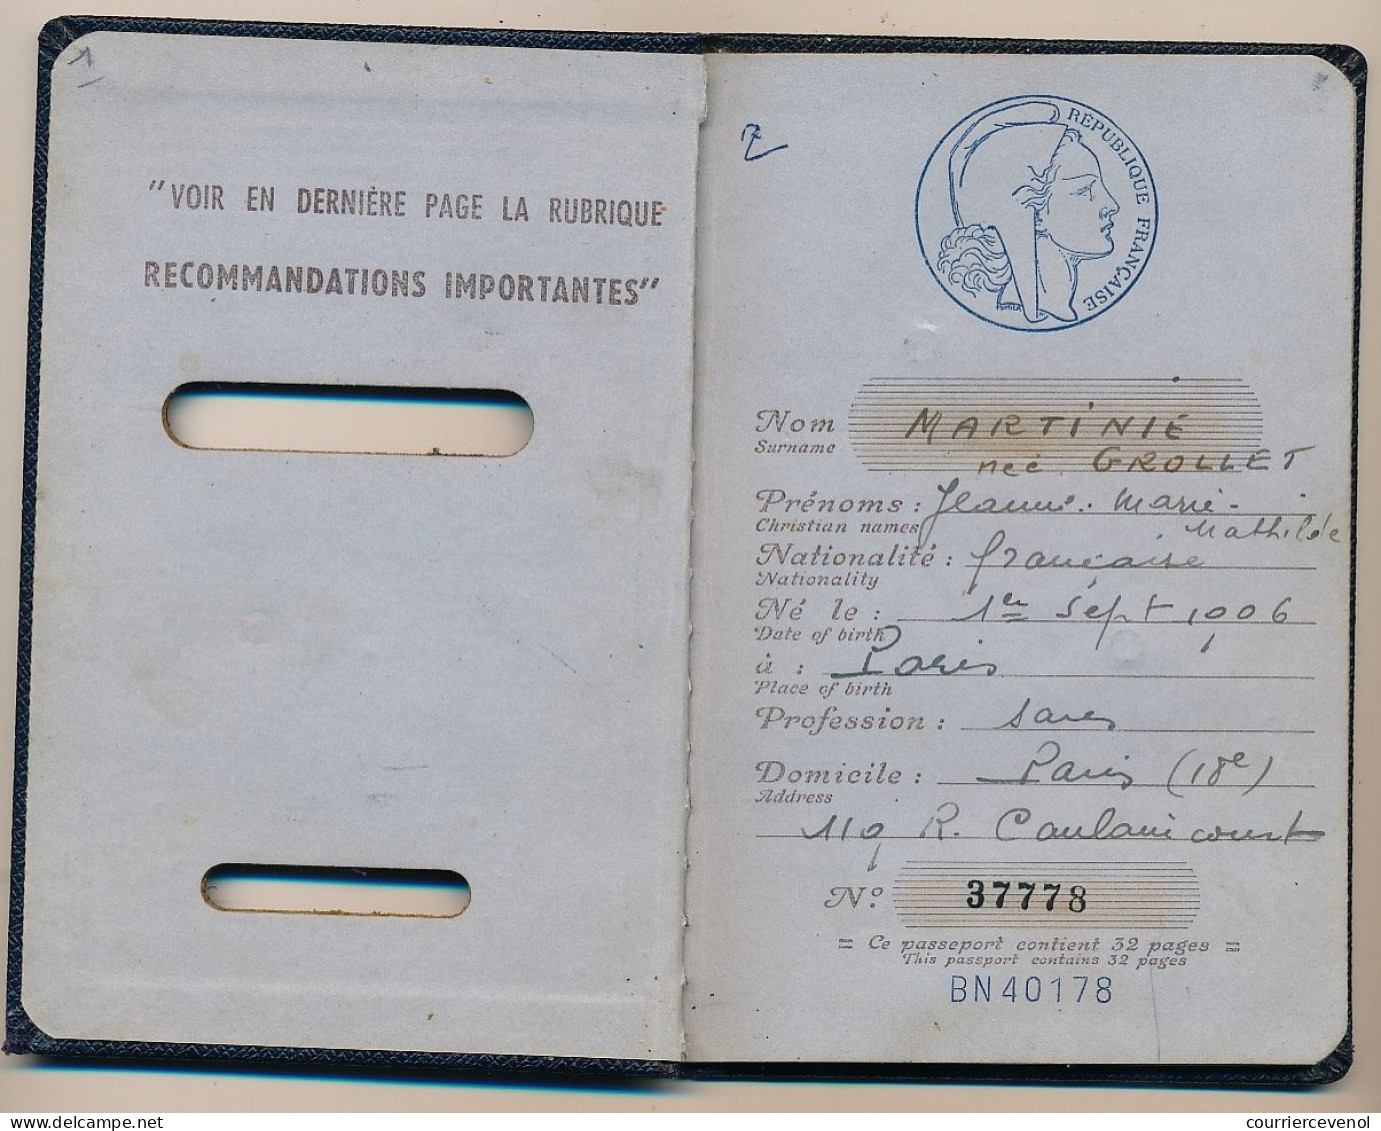 FRANCE - Passeport Délivré à Paris - 1955 / 1963 - Fiscaux Type Daussy 2000F Et 3200F - Divers Visas Européens - Briefe U. Dokumente